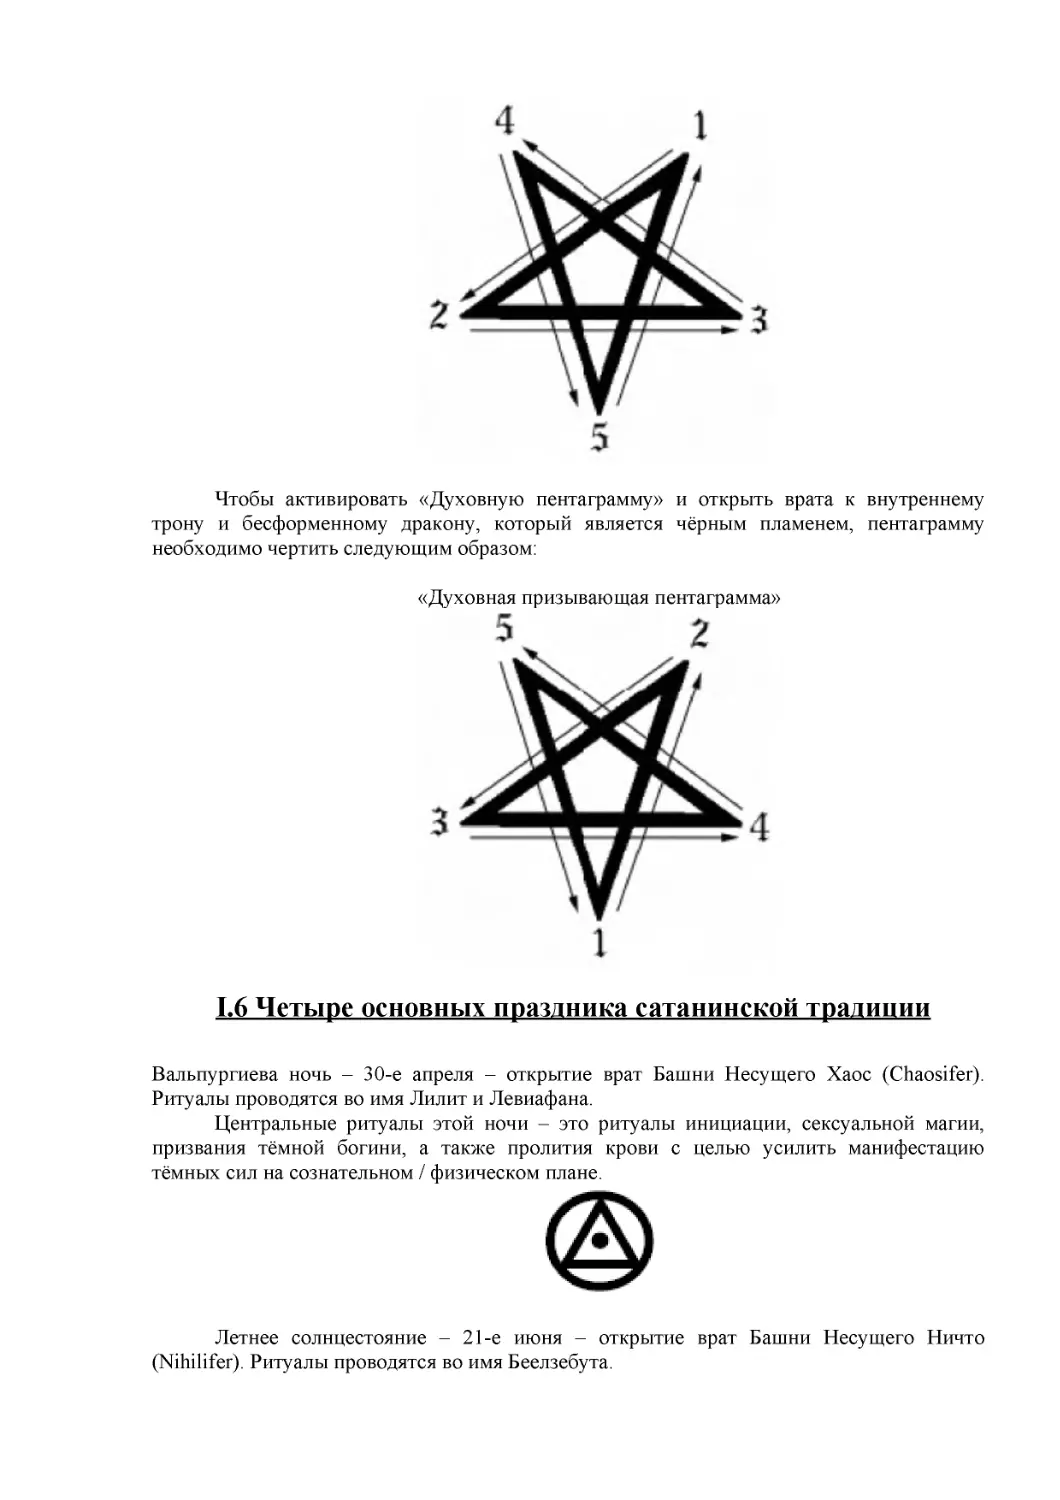 I.6 Четыре основных праздника сатанинской традиции